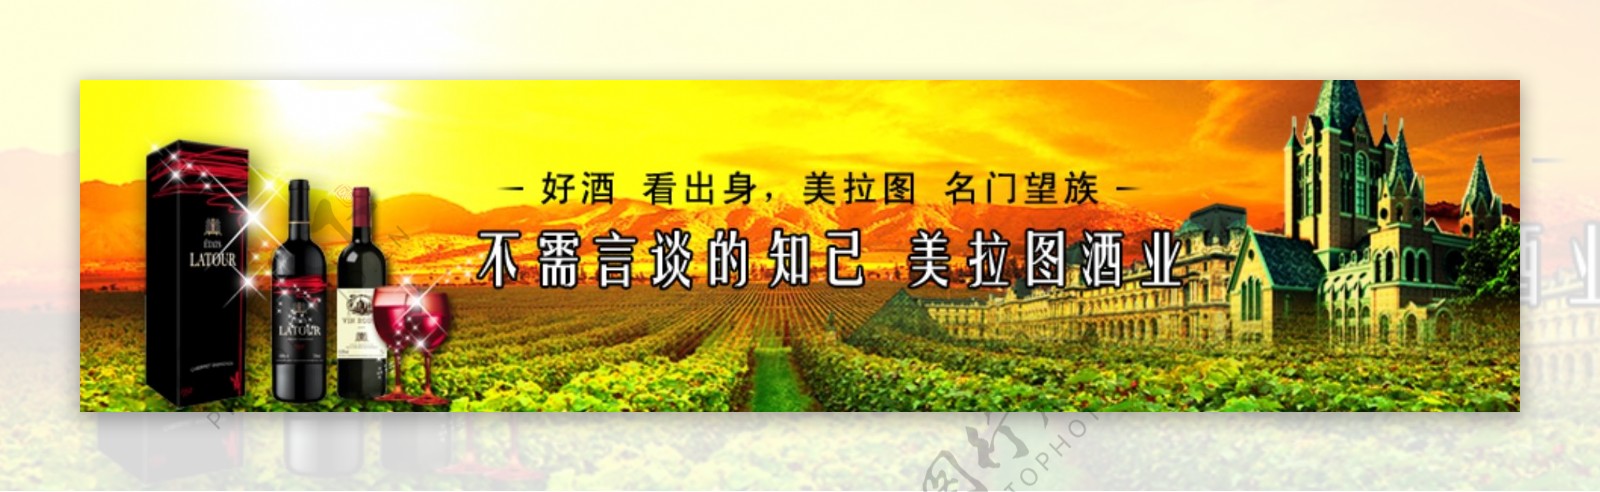 红酒广告banner